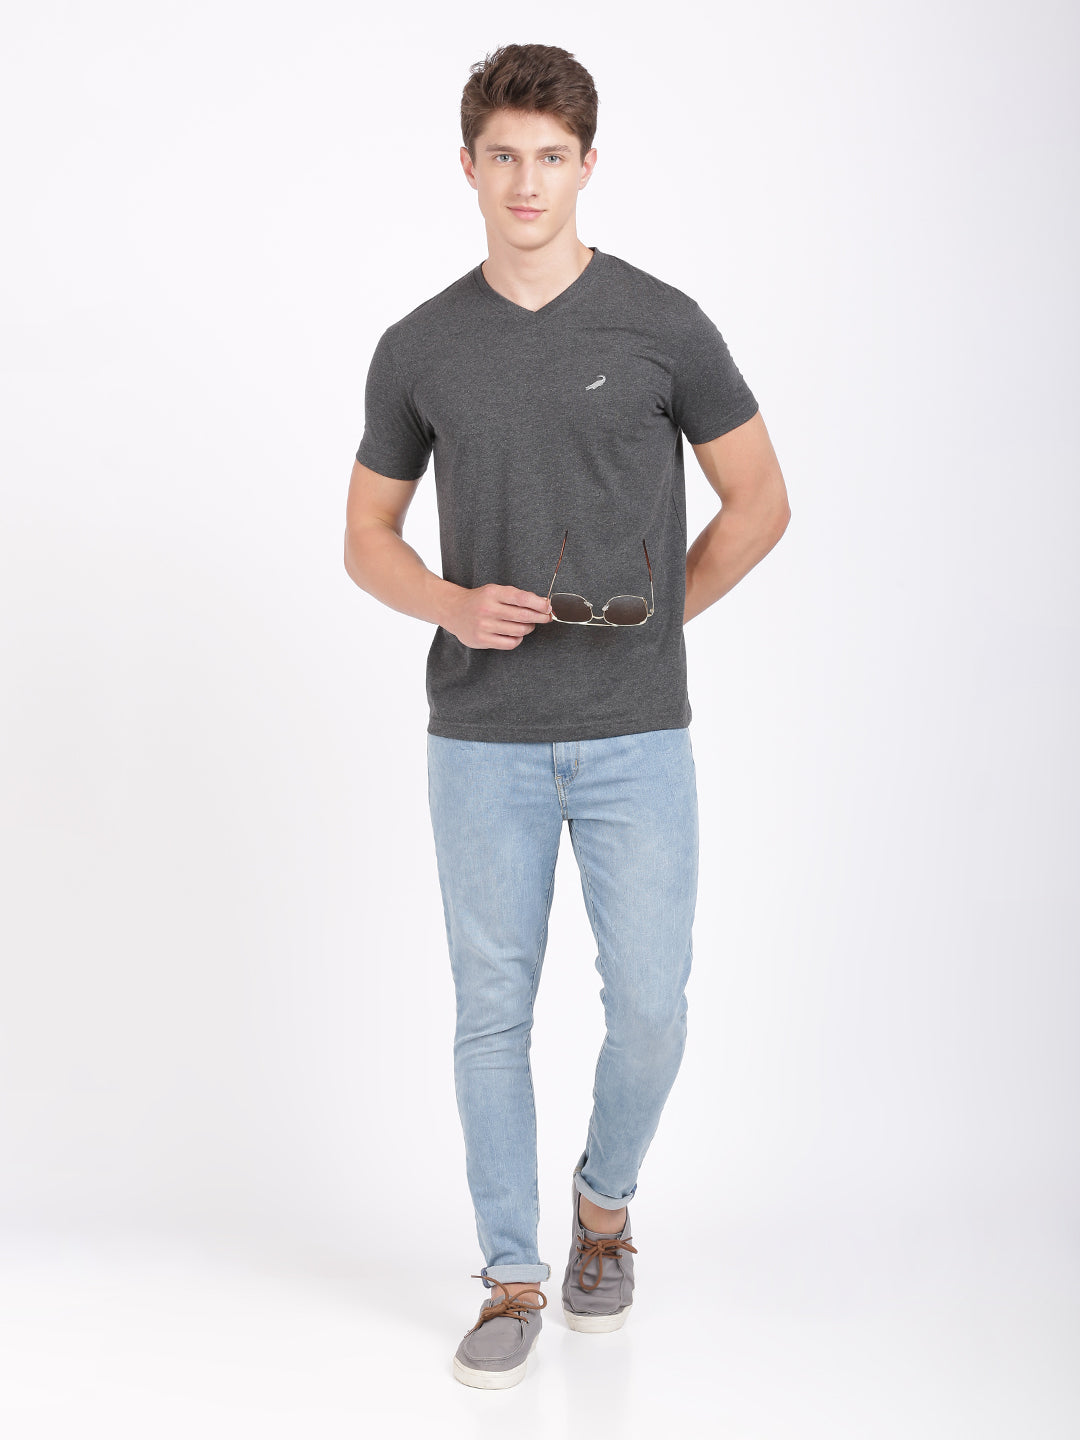 Men's Solid V Neck Half Sleeve Cotton T-Shirt - CHARCOAL MELANGE